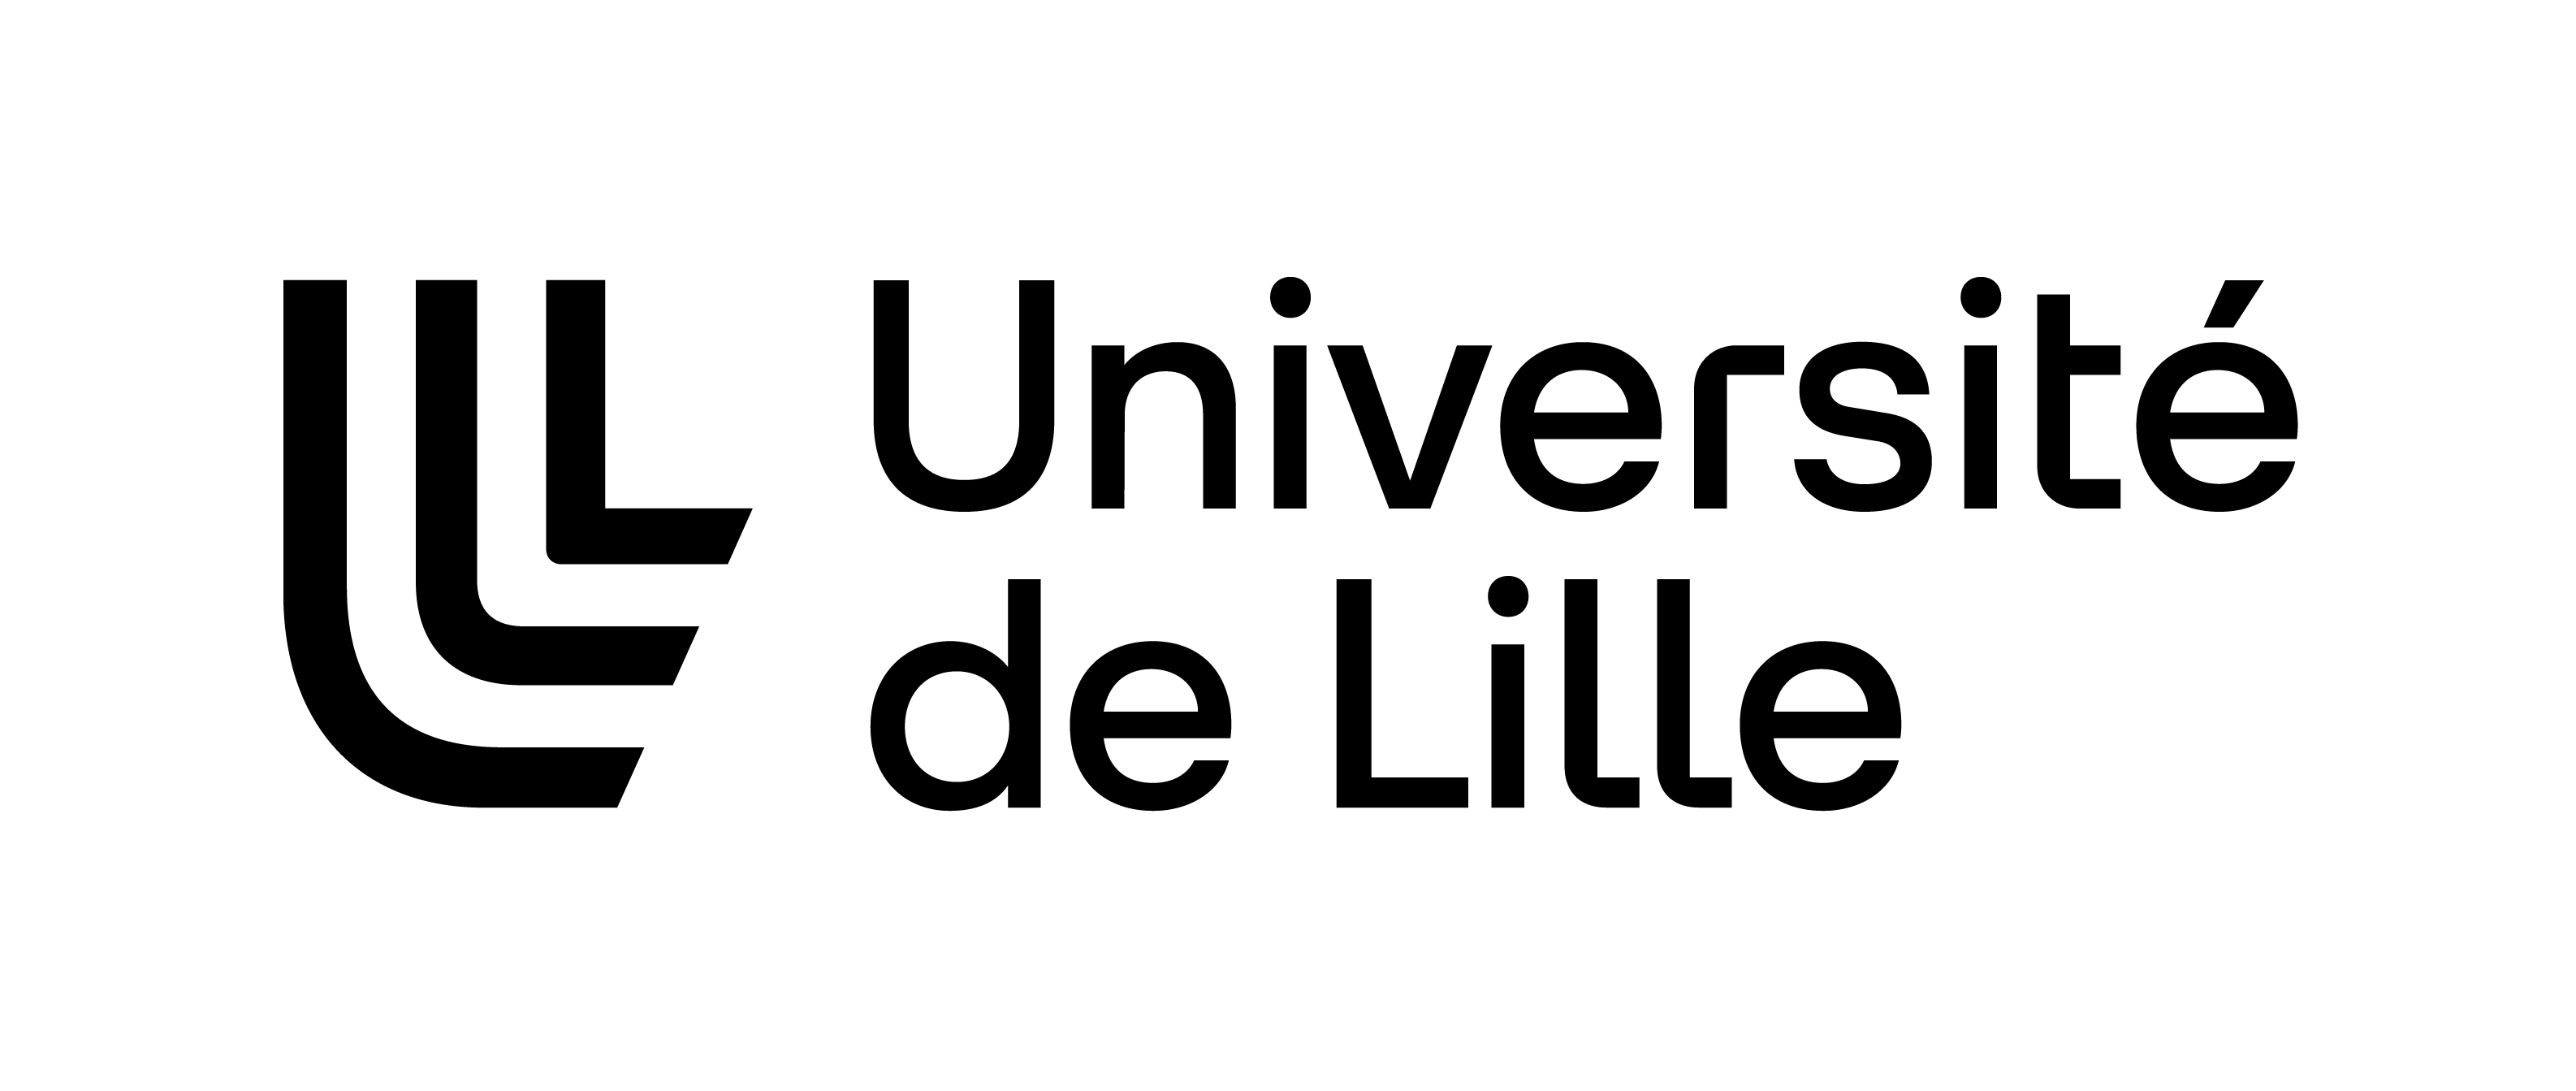 Université de Lille - https://www.univ-lille.fr/